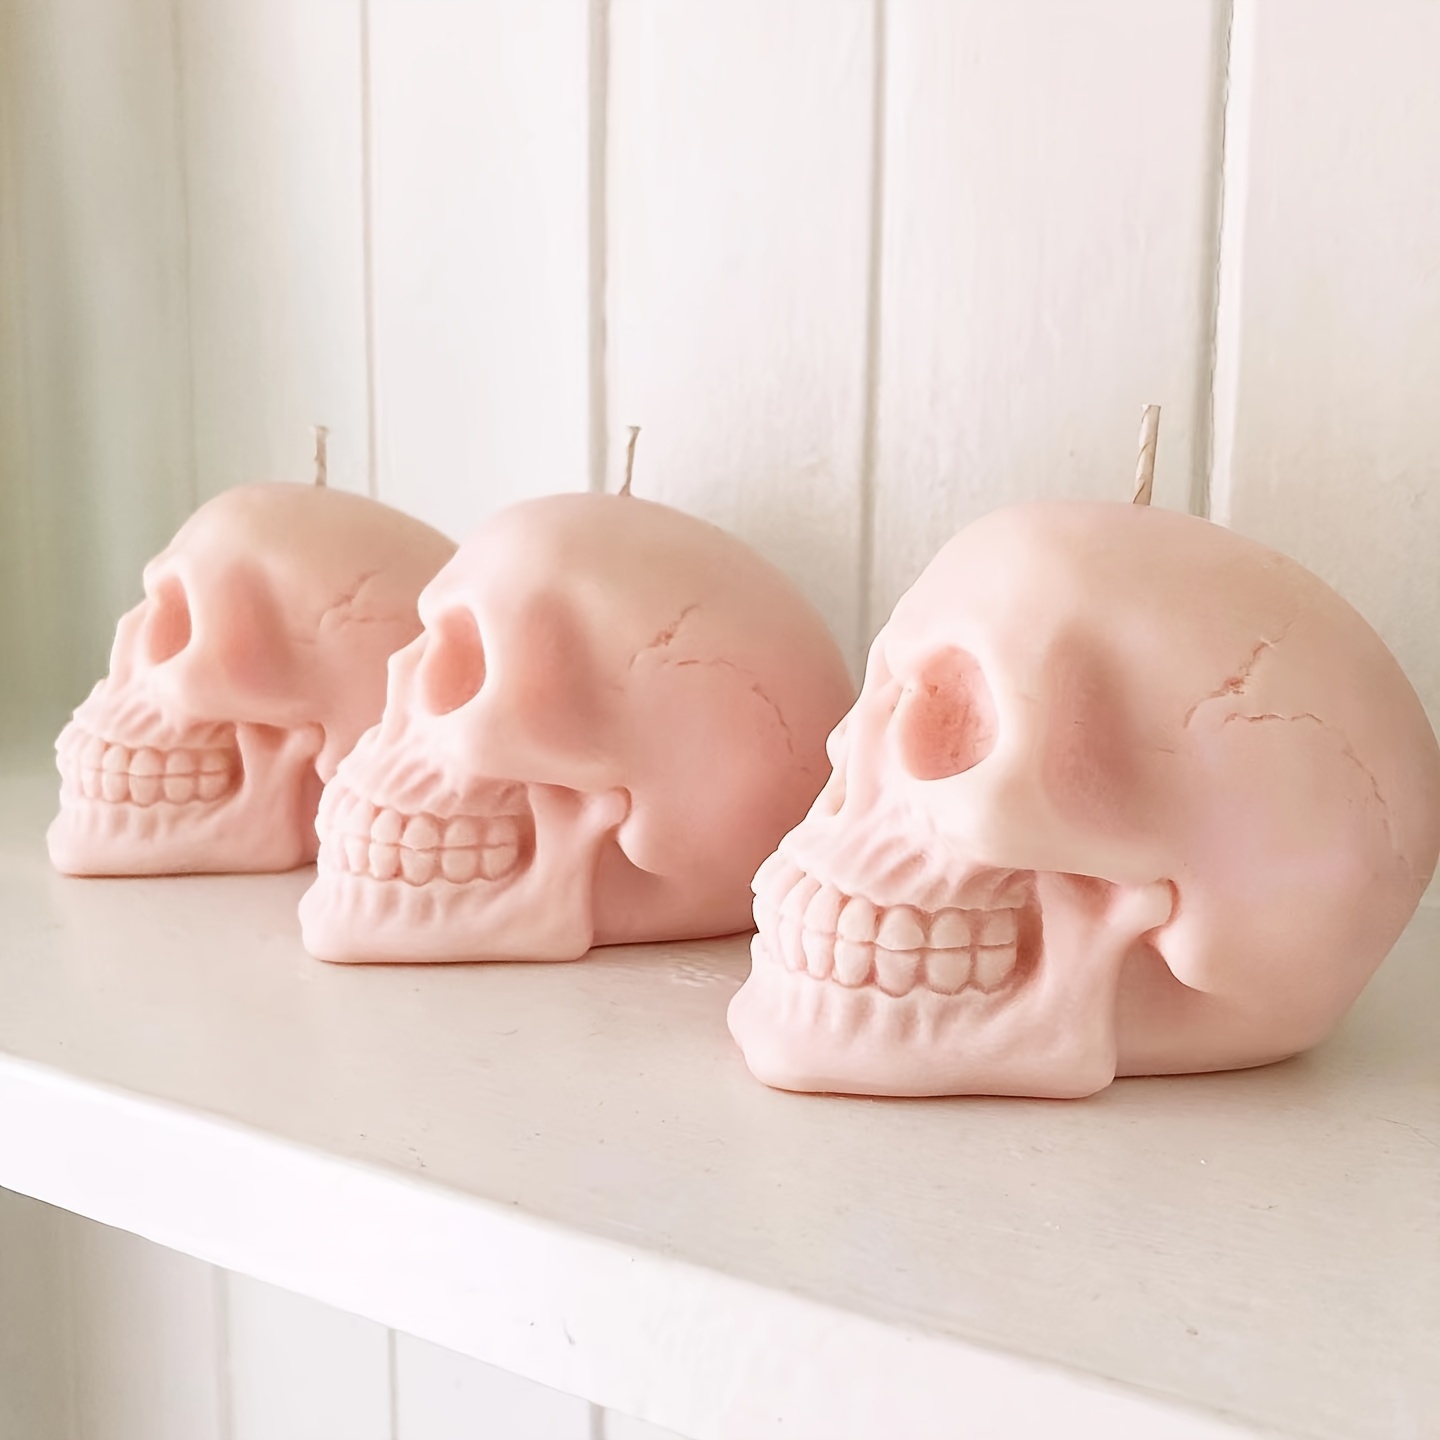 Let's Resin Silicone Skull Molds, 3D Large Skull Shape Molds for Epoxy Resin, Skeleton Skull Decor Epoxy Resin Mold for Candle Making, Home Decor, ou